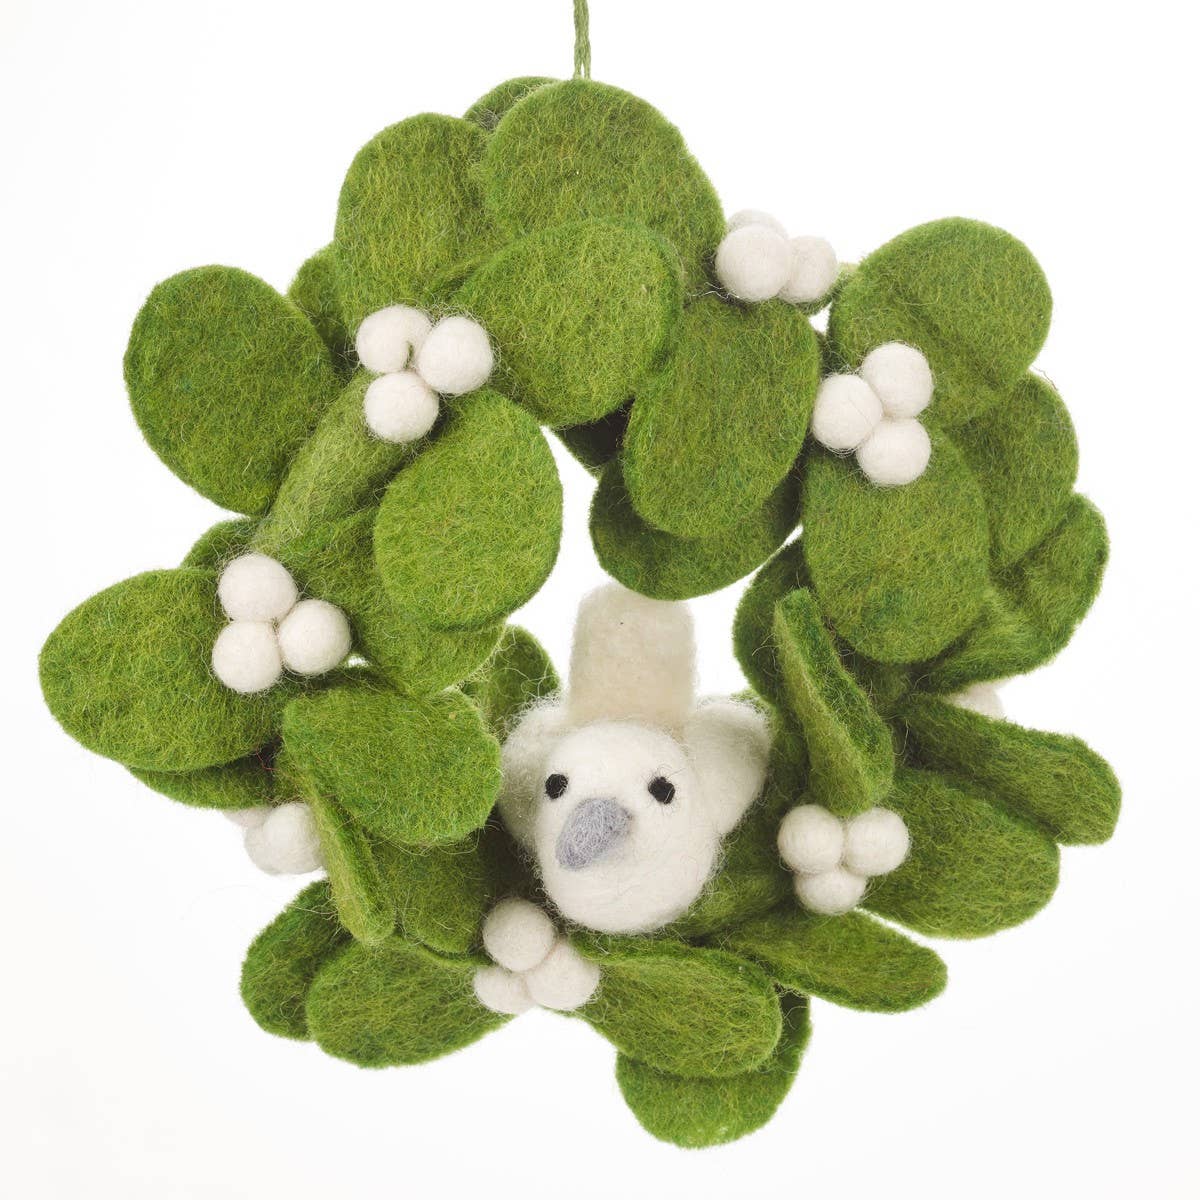 Handmade Felt Fair tade Mistletoe Mini Wreath with Doves